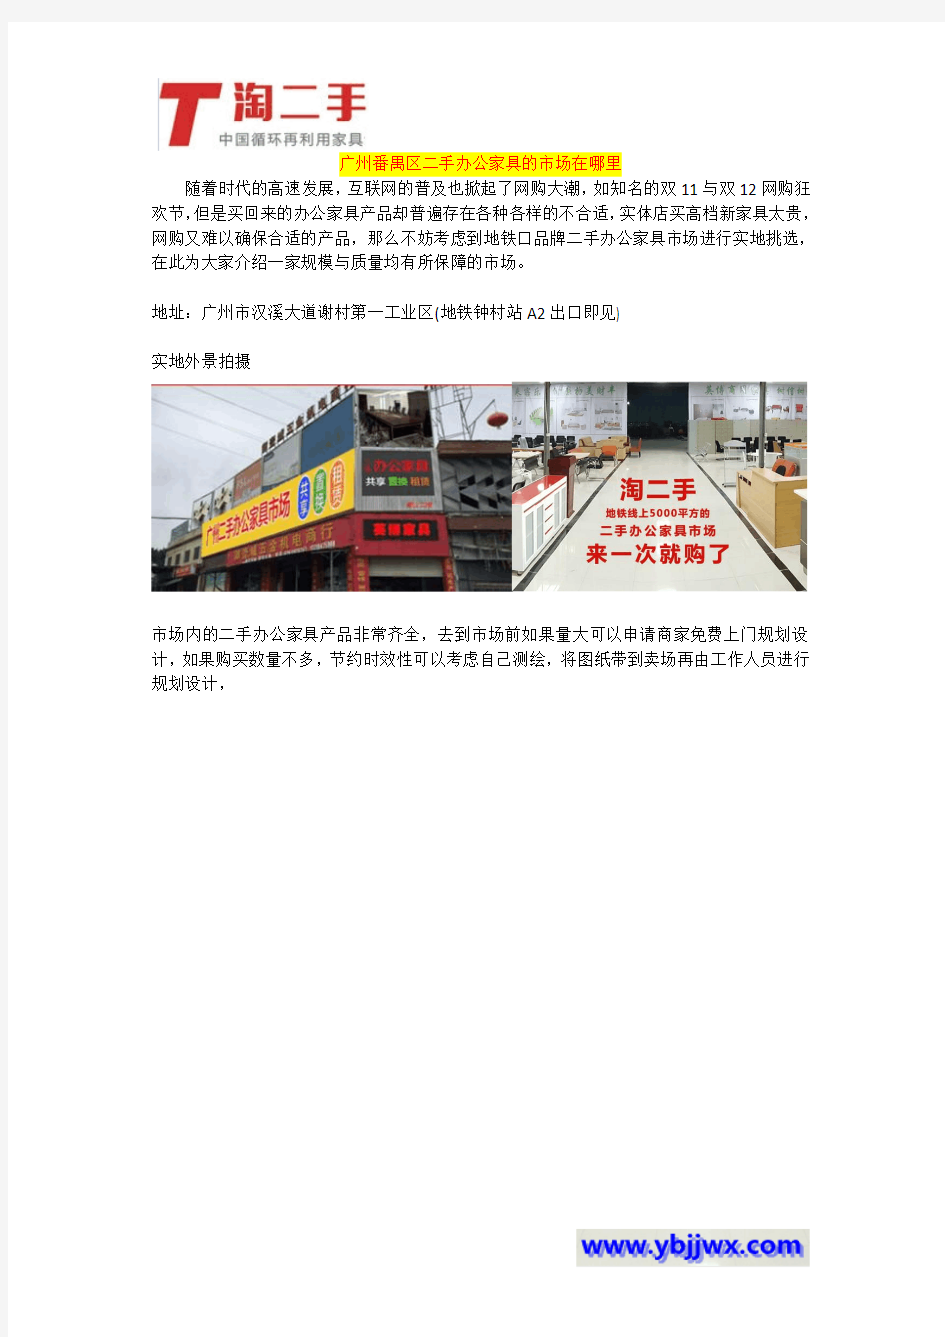 广州番禺区二手办公家具的市场在哪里